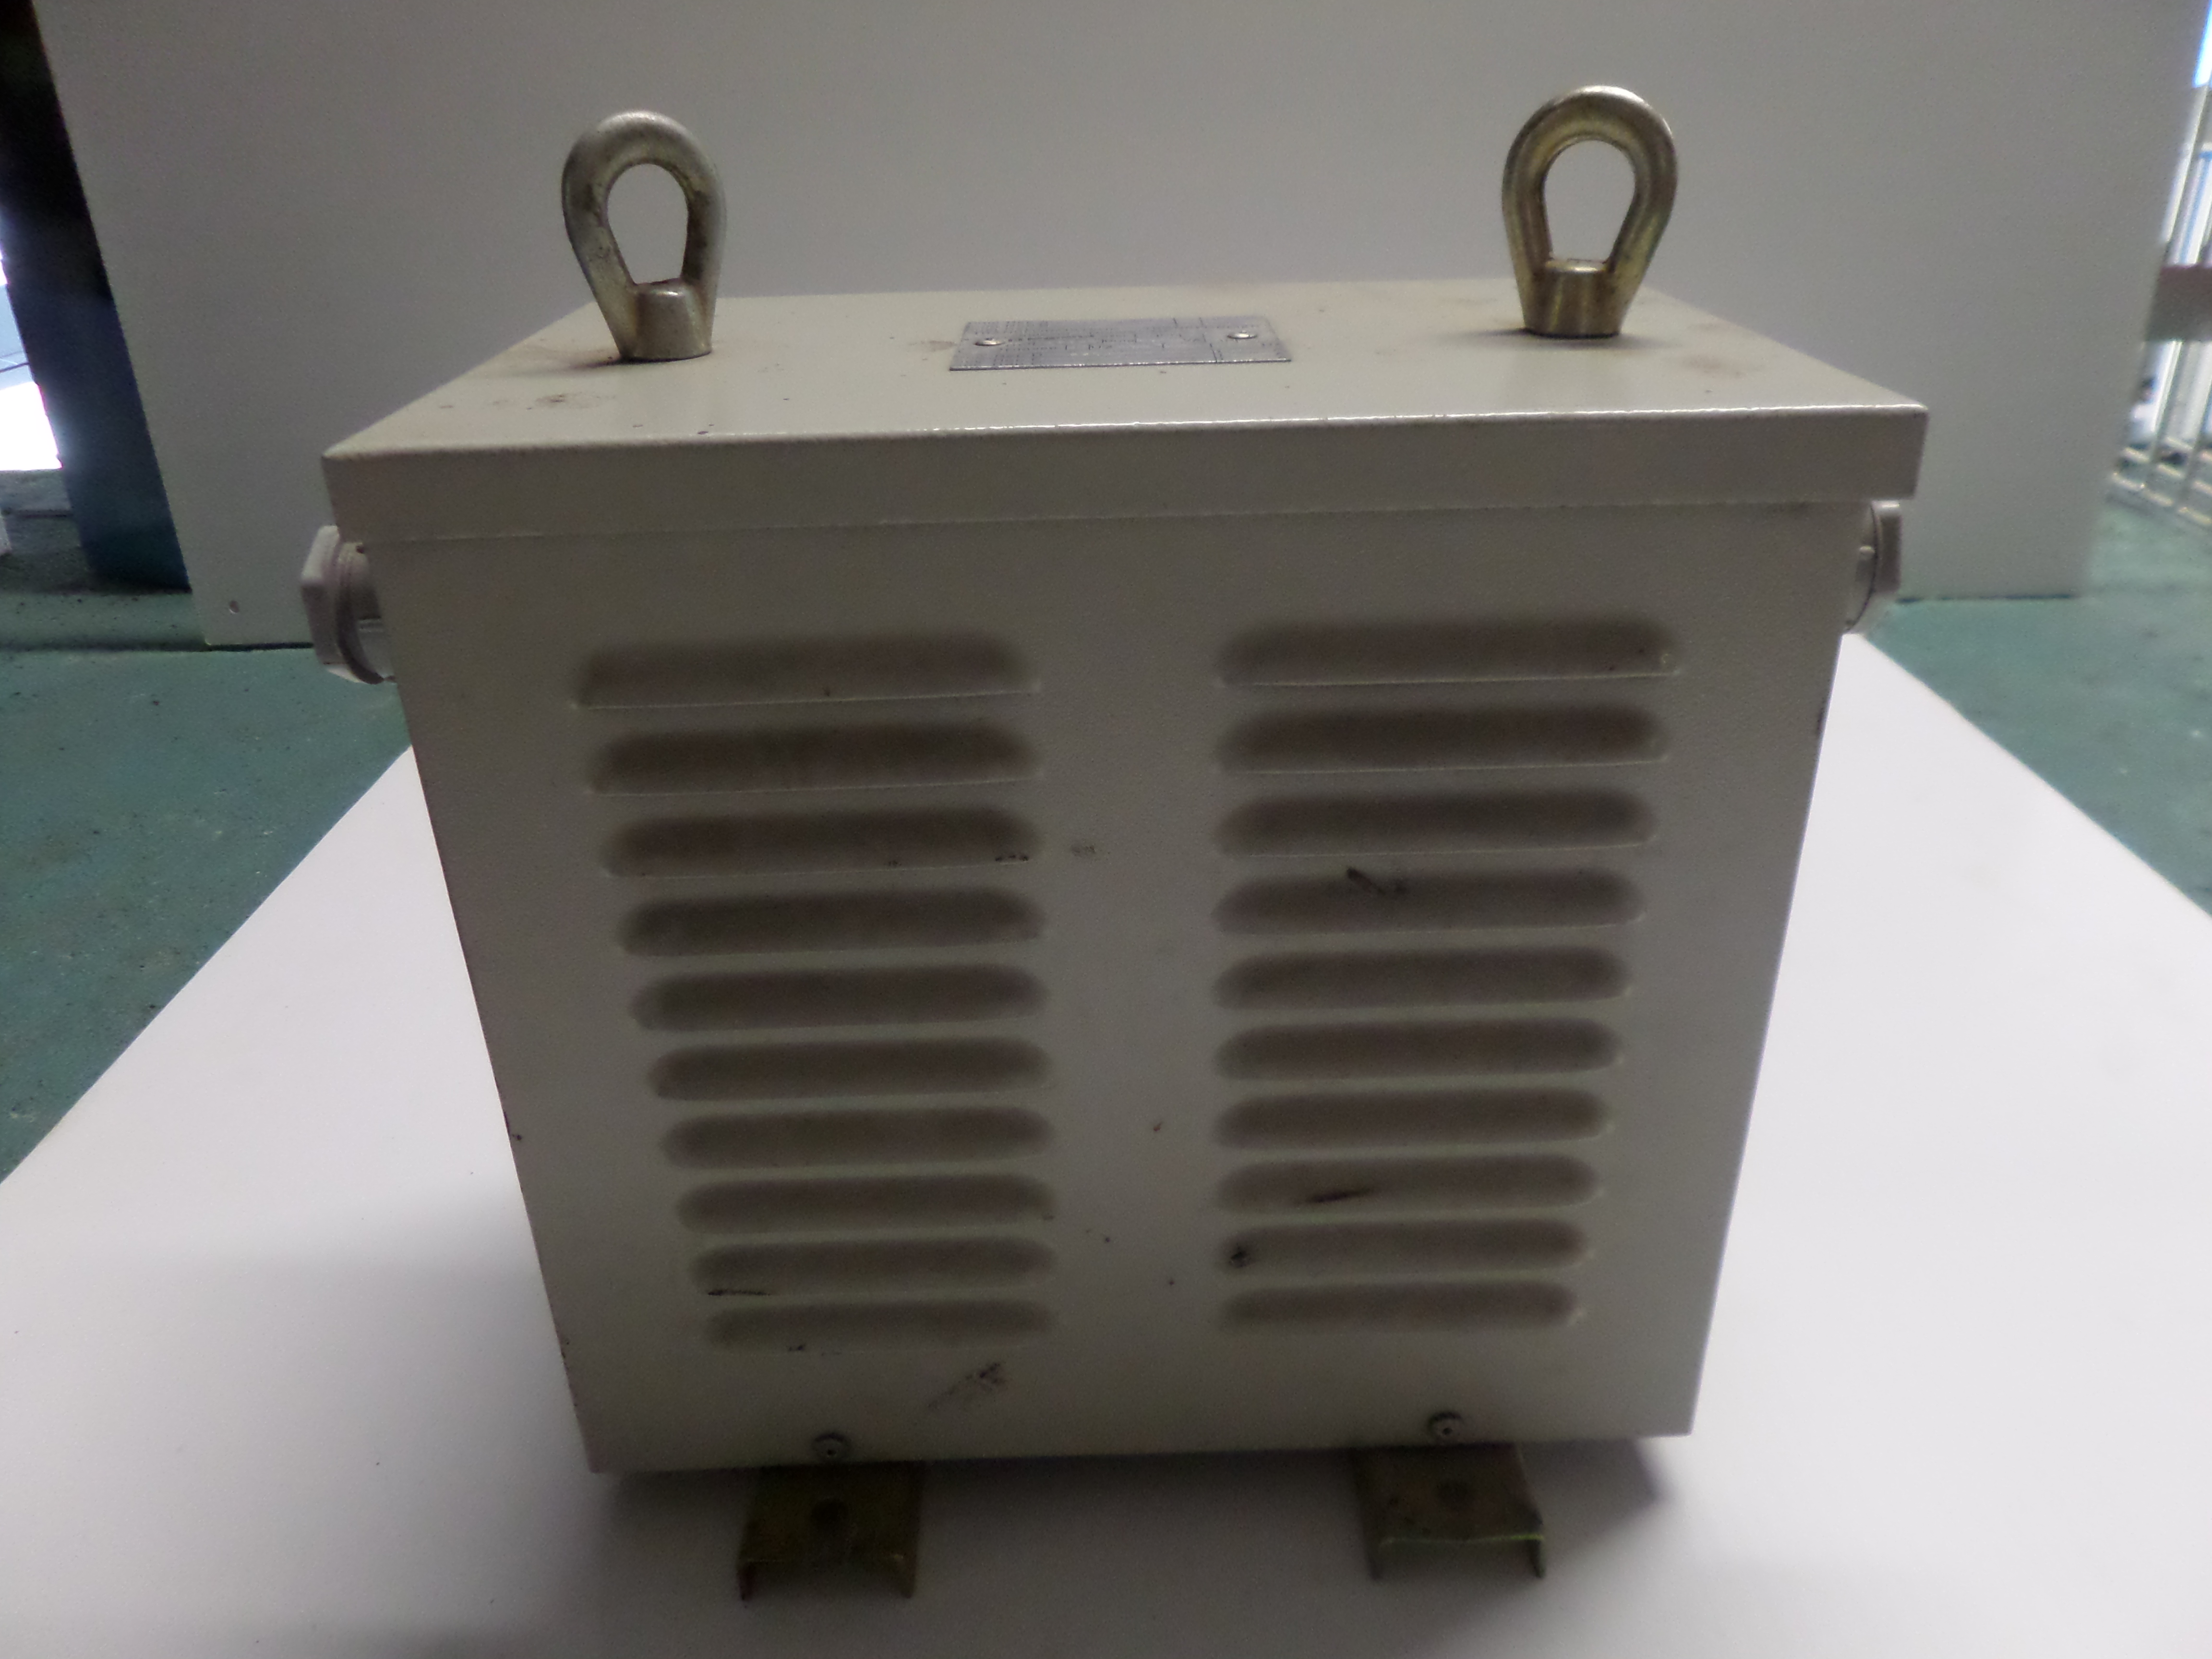 Transformateur de tension LEGRAND, 630 VA - Prim : 380V - Sec : 220V